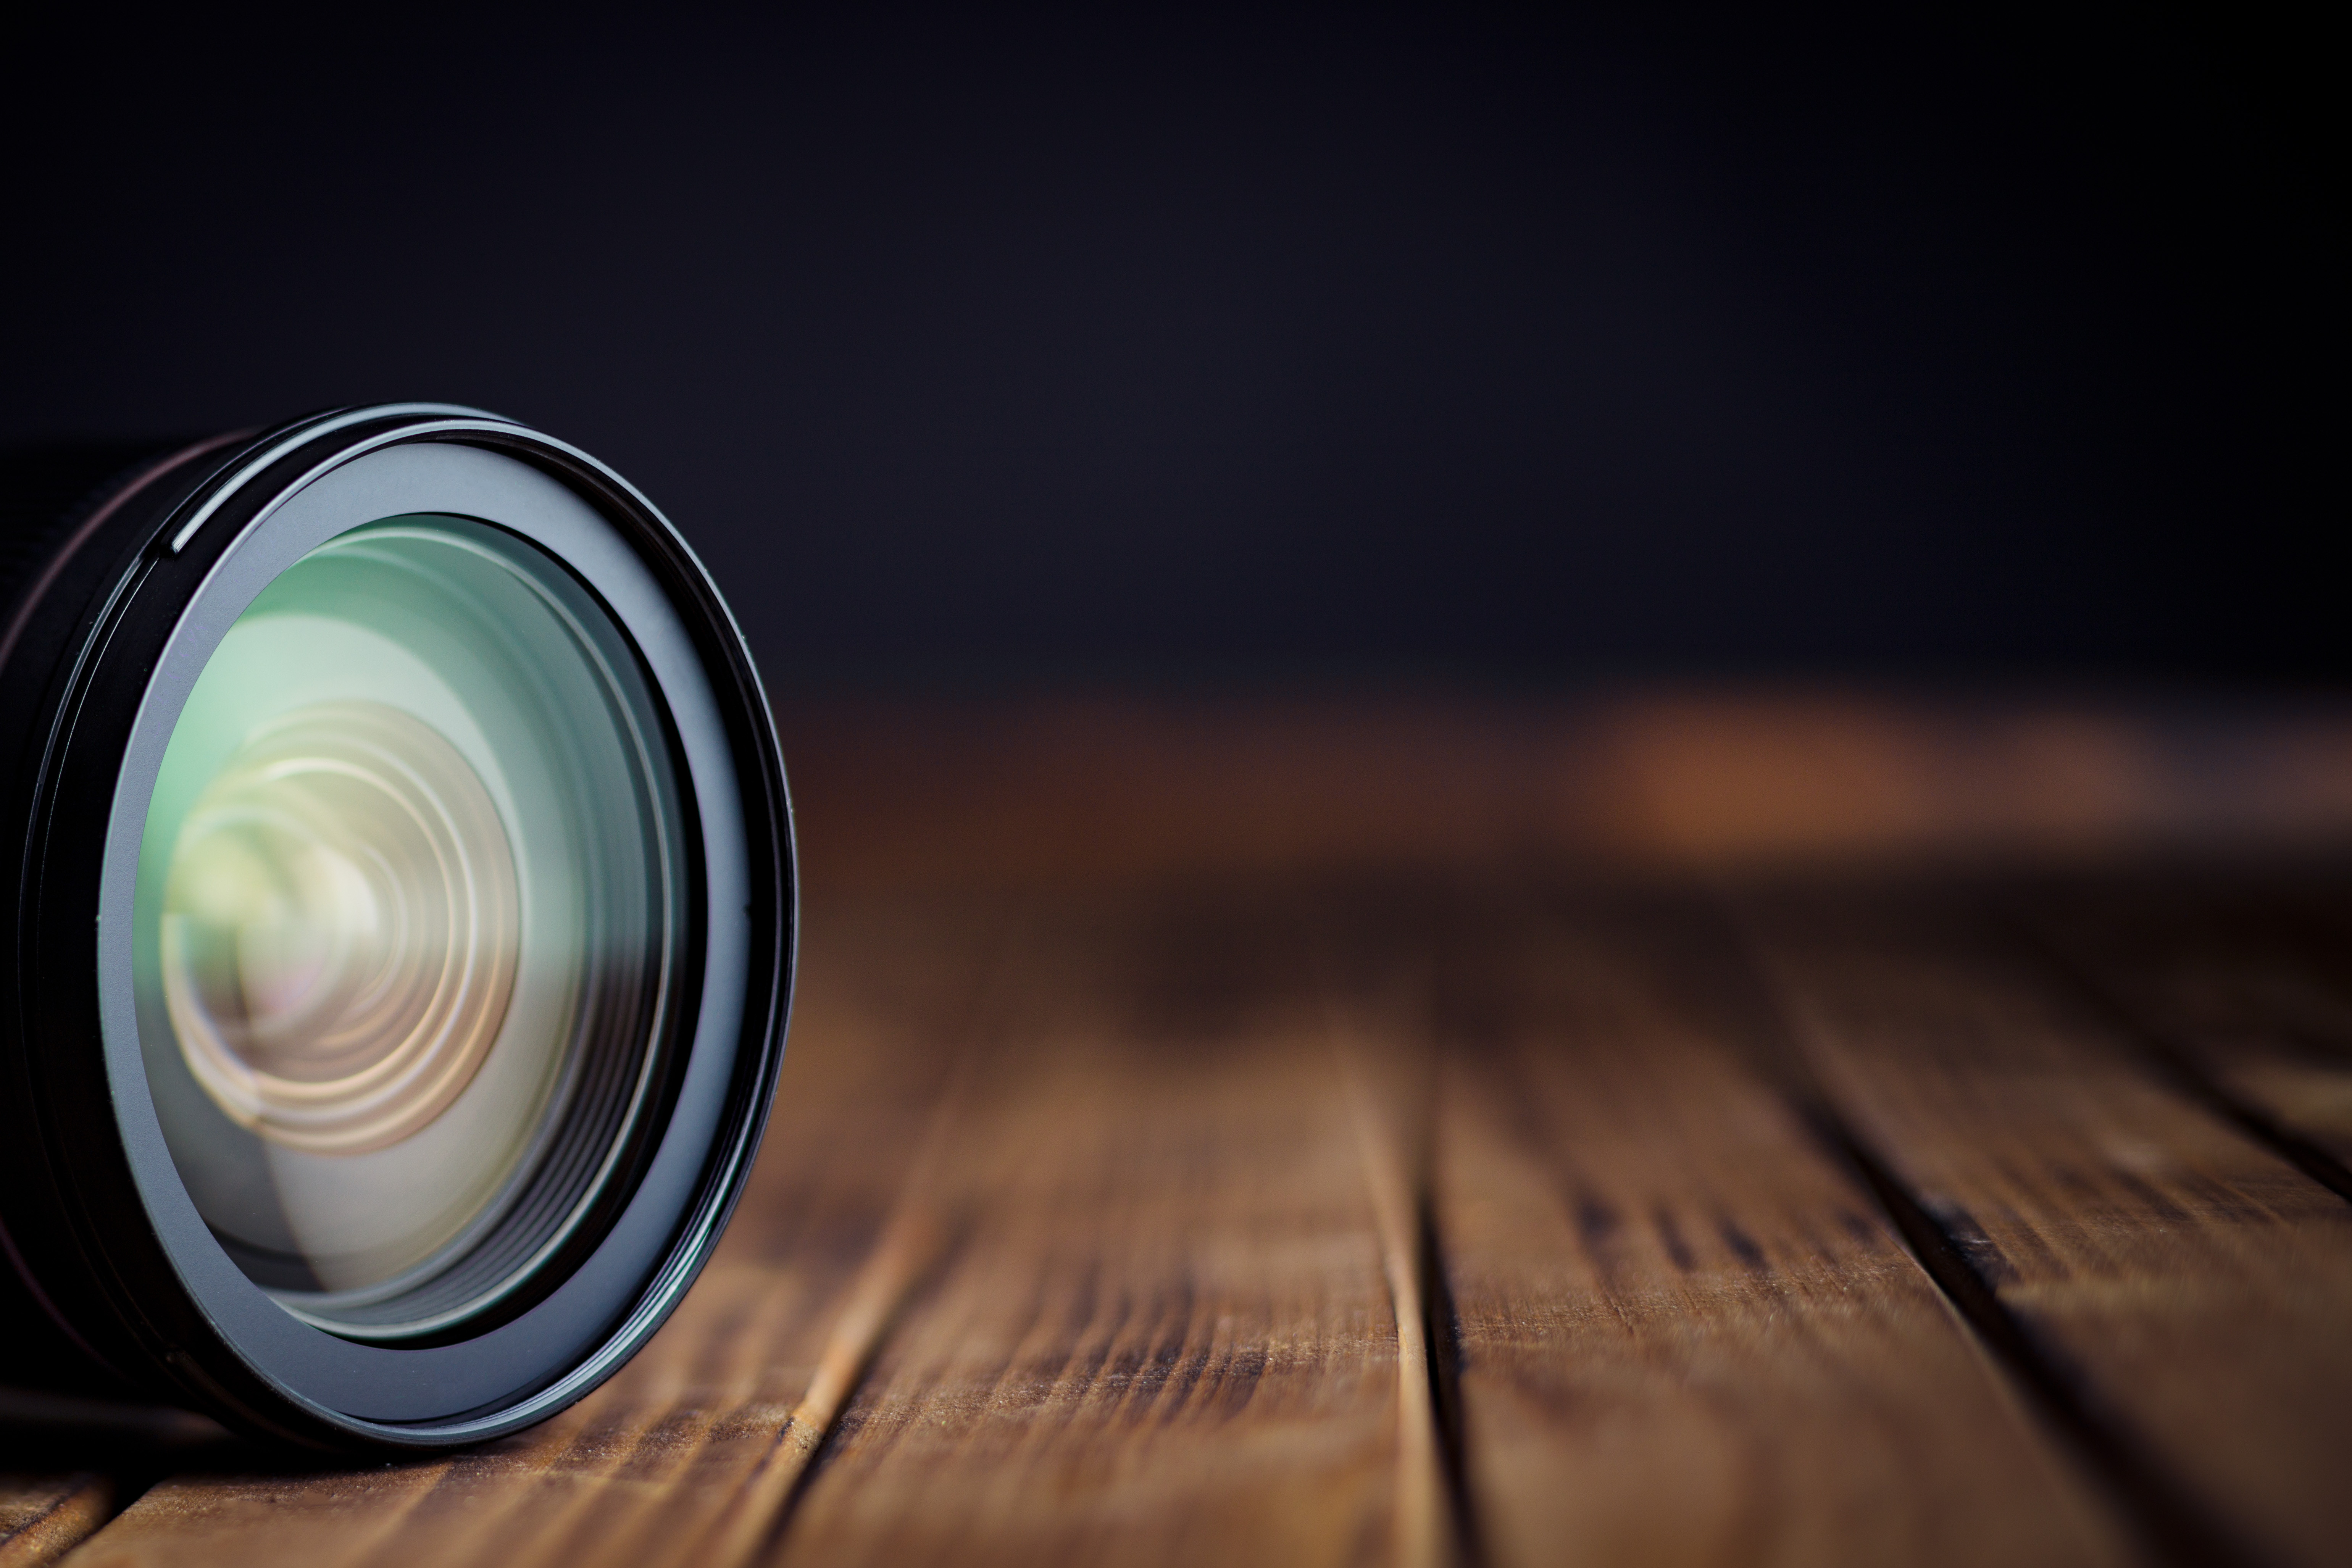 Daha iyi lensler size daha iyi bir fotoğrafçılık mı sağlar? Yoksa size tecrübe mi kazandırır